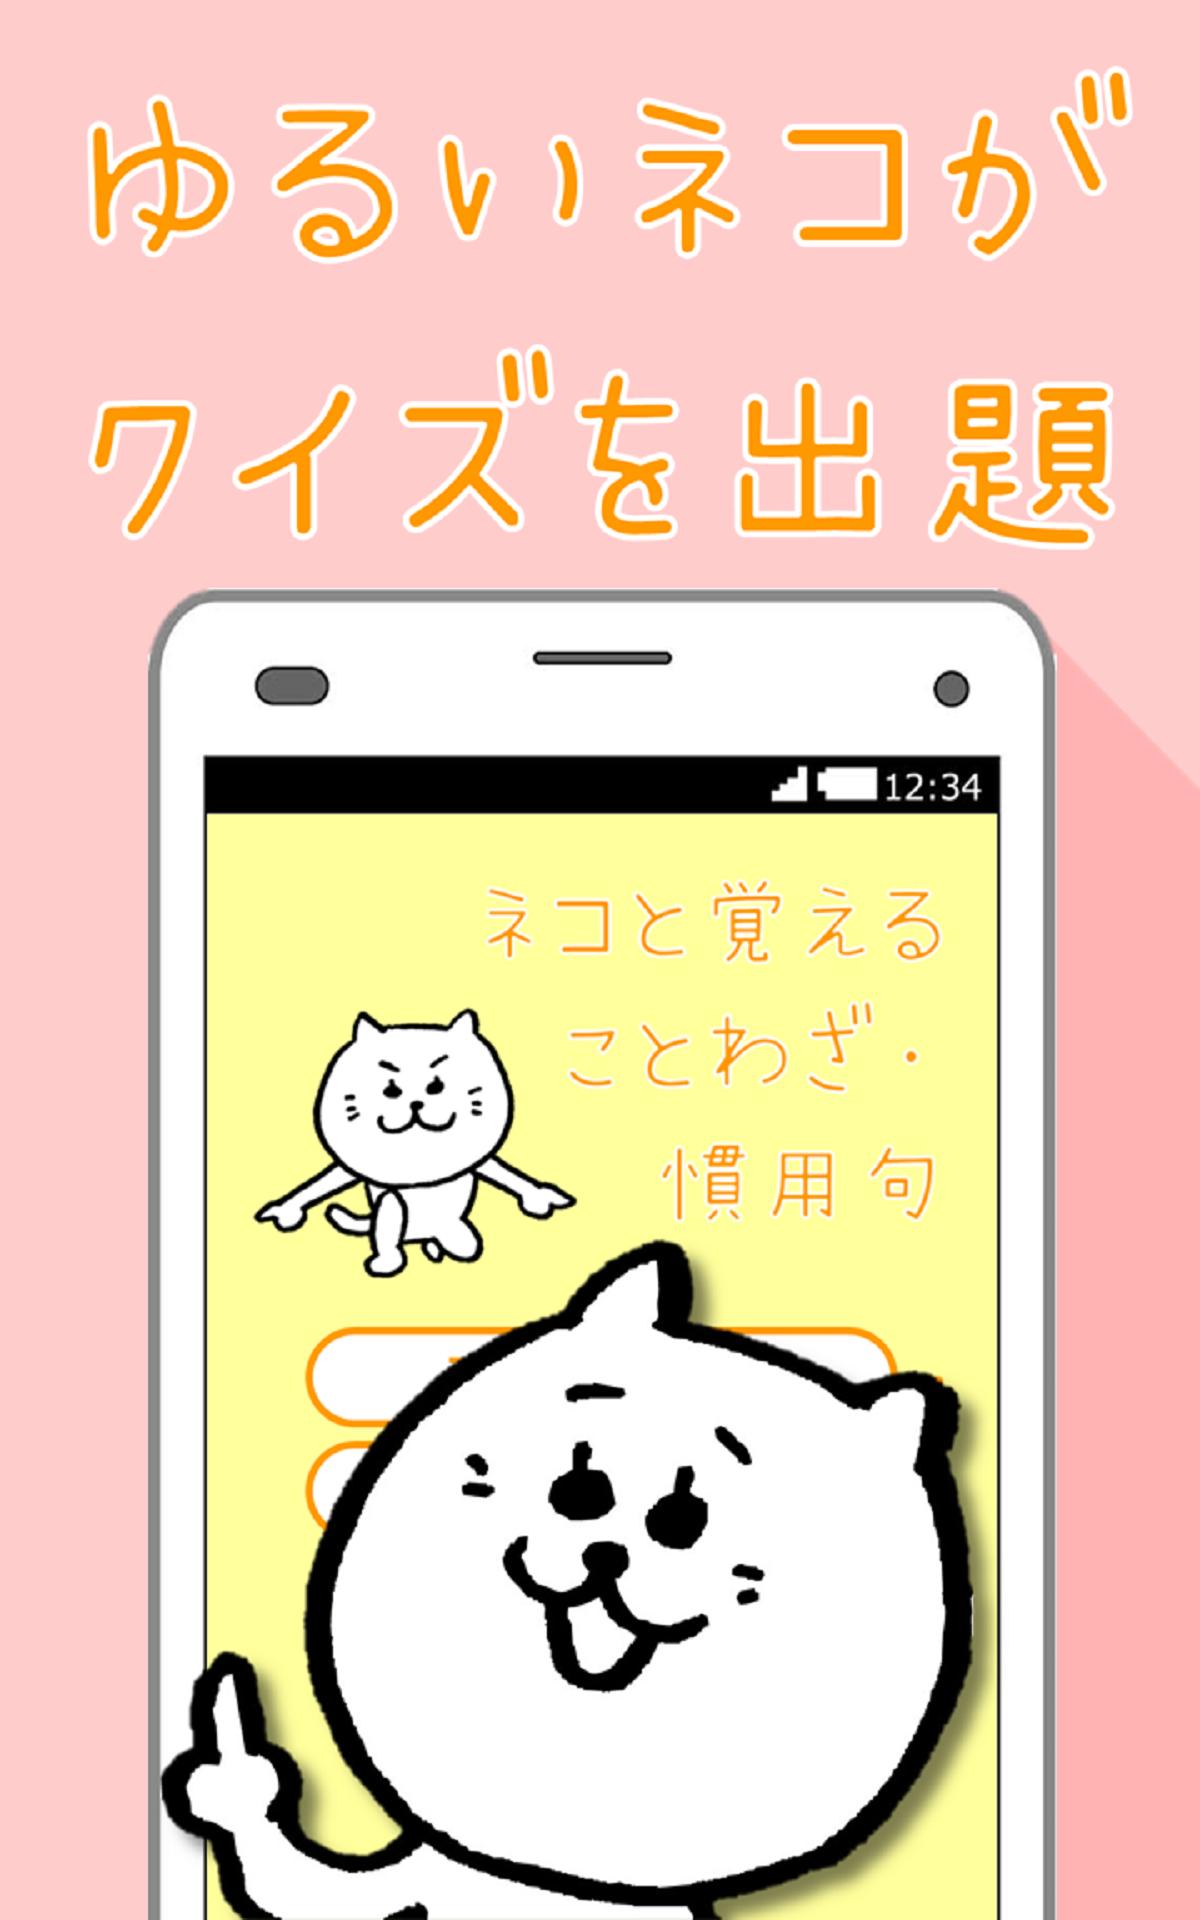 ネコと覚えることわざ 慣用句 白猫さんの無料学習クイズアプリ For Android Apk Download